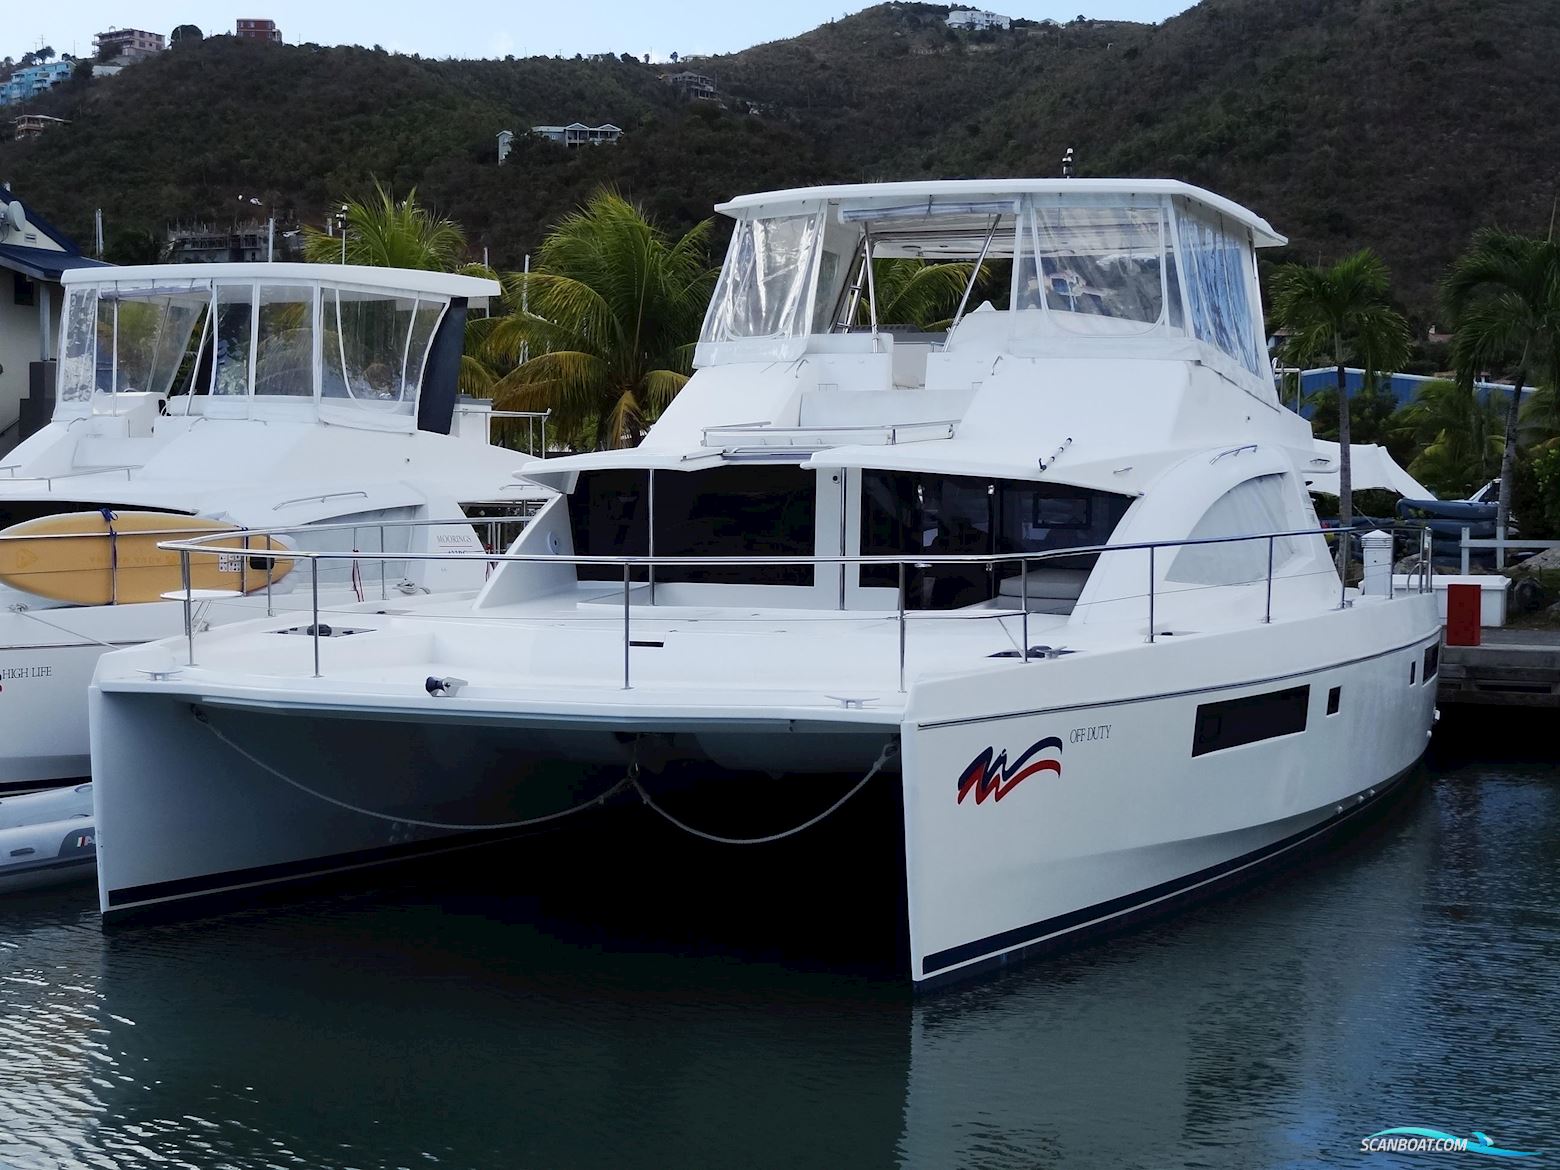 LEOPARD 51 Powercat Motorbåt 2019, med Yanmar motor, Ingen landinfo